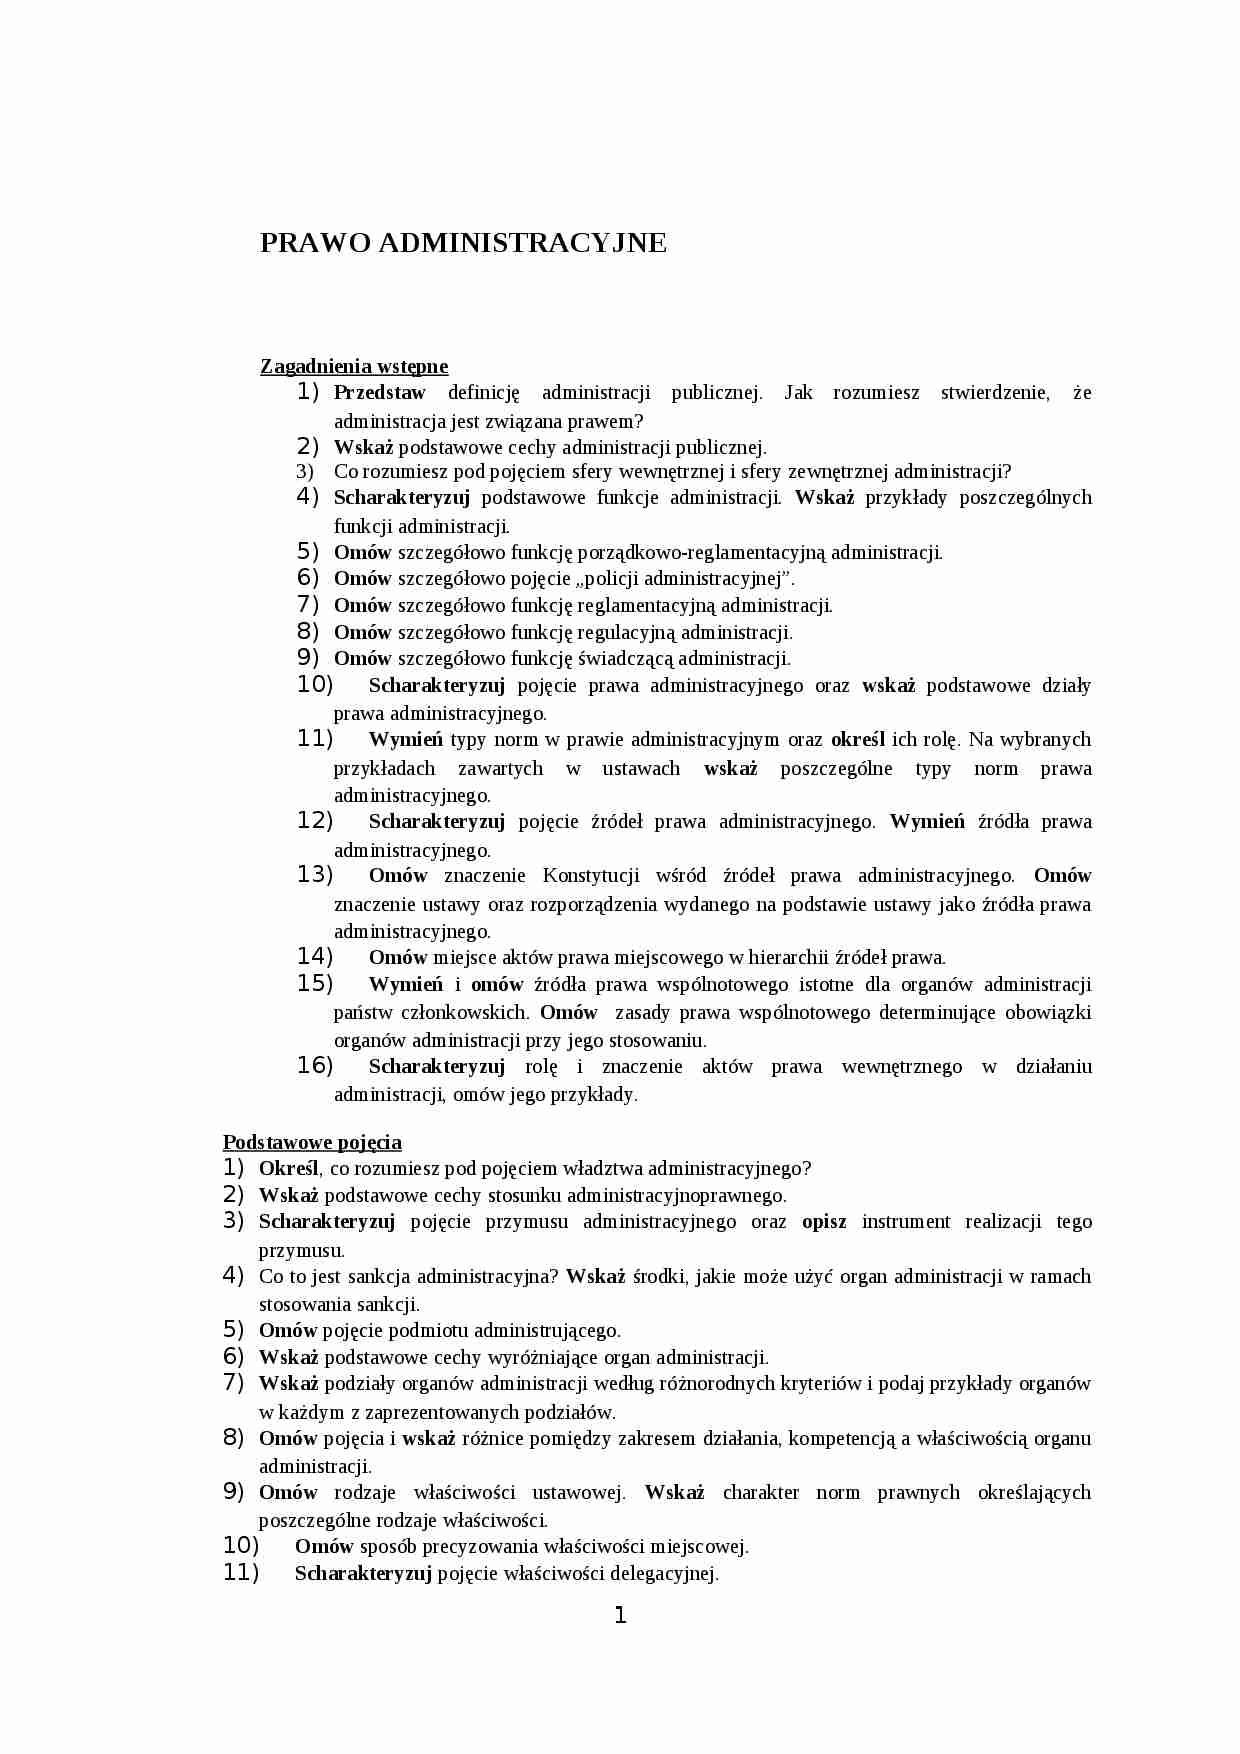 Prawo administracyjne - pytania do egzaminu - strona 1